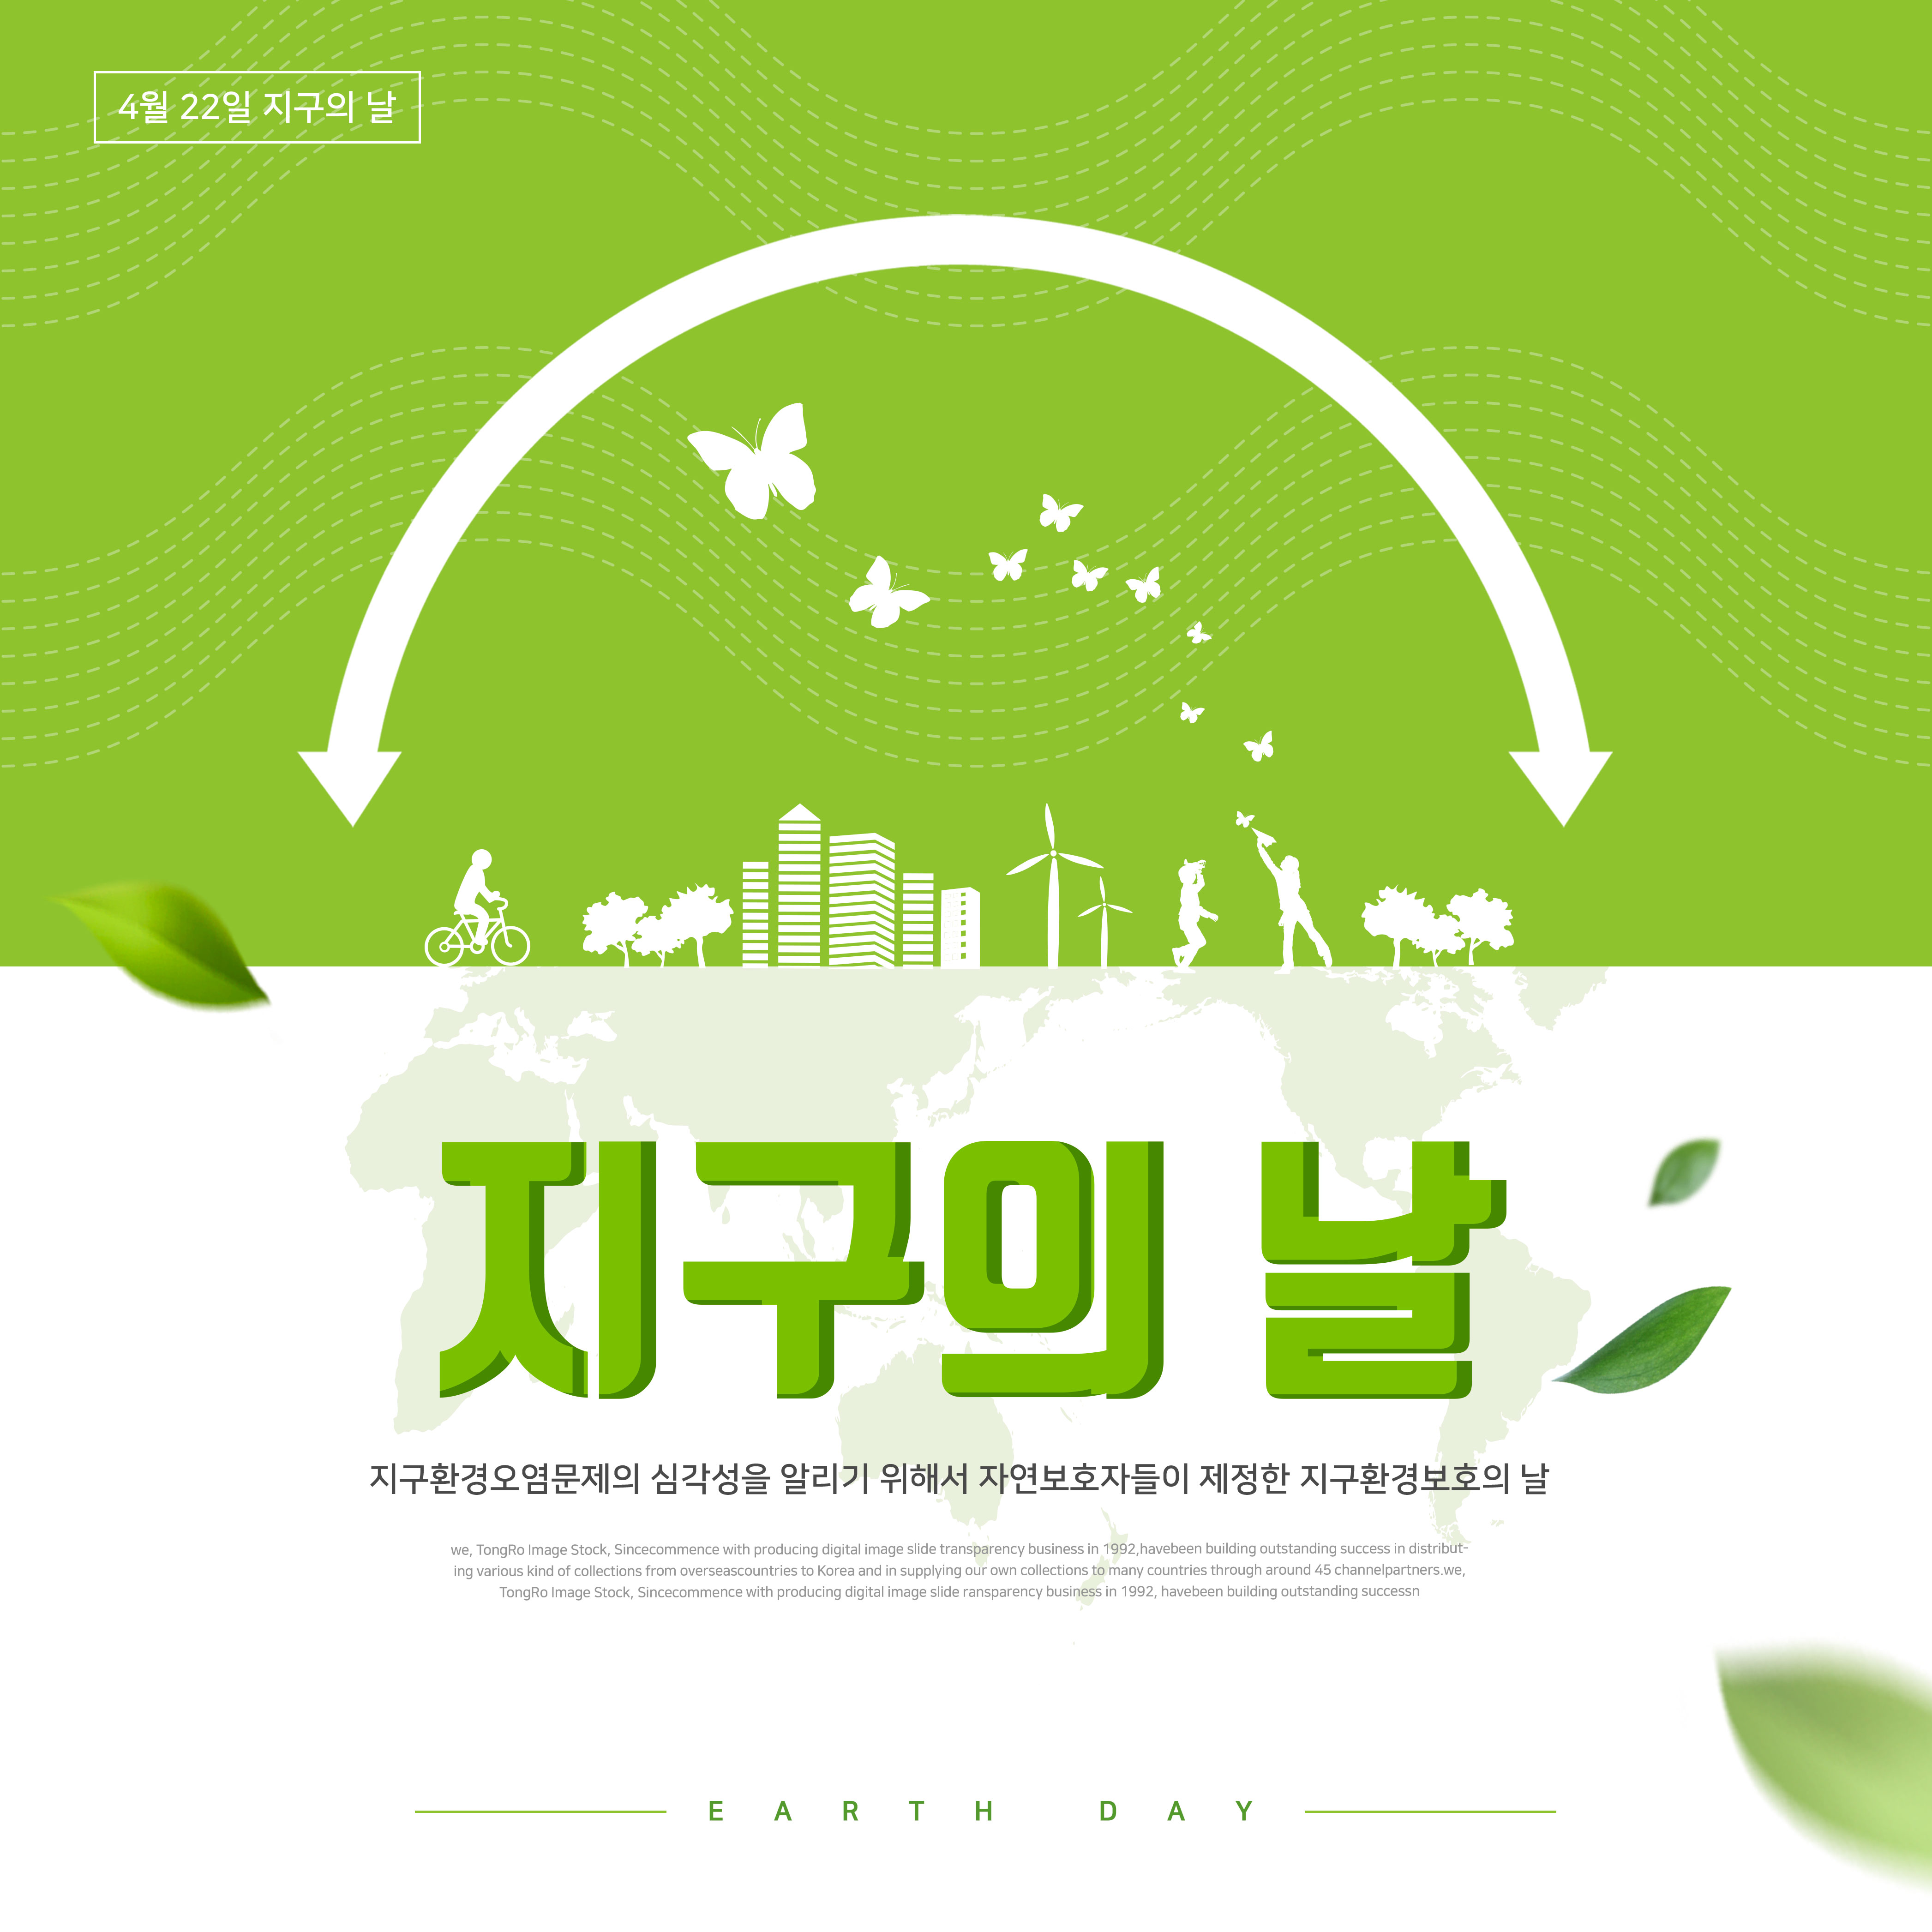 地球环境保护日绿色主题海报PSD素材蚂蚁素材精选韩国素材插图